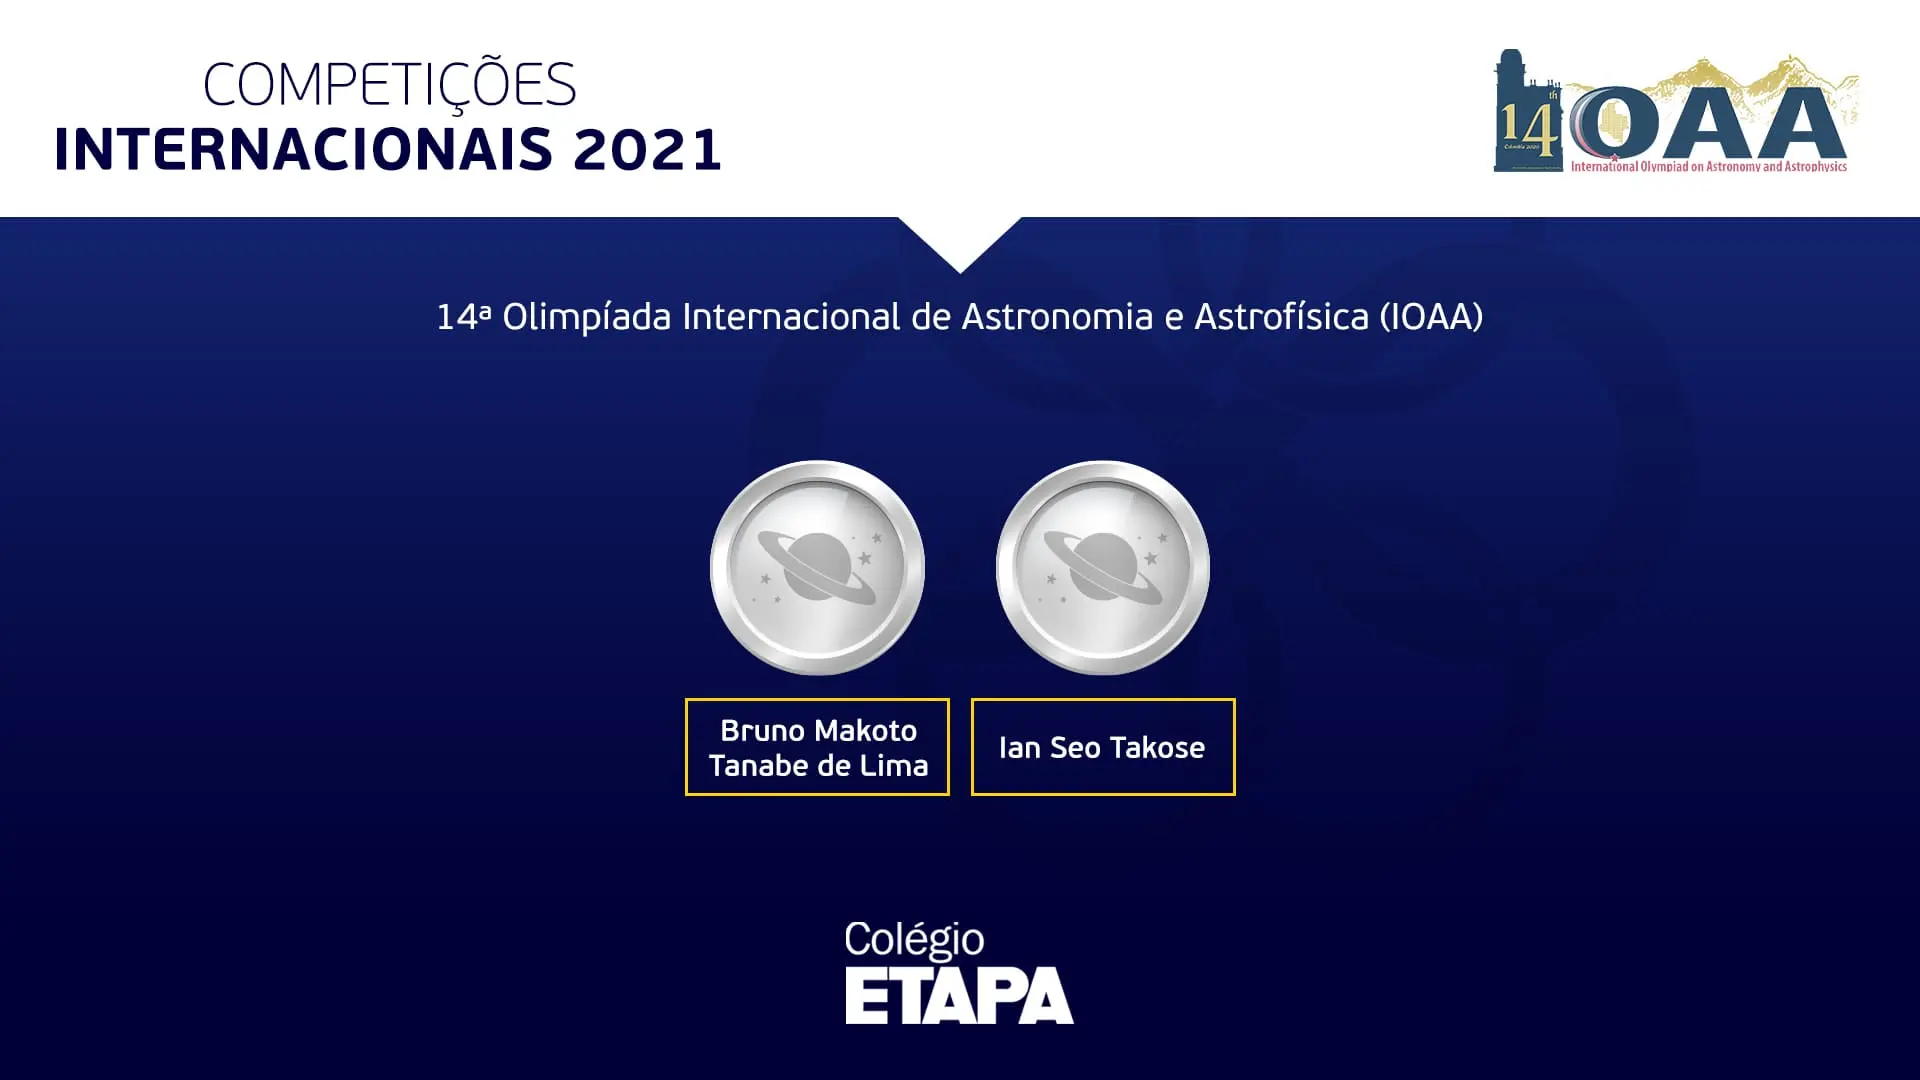 Dois alunos do Colégio Etapa conquistaram medalhas de prata na IOAA 2021.